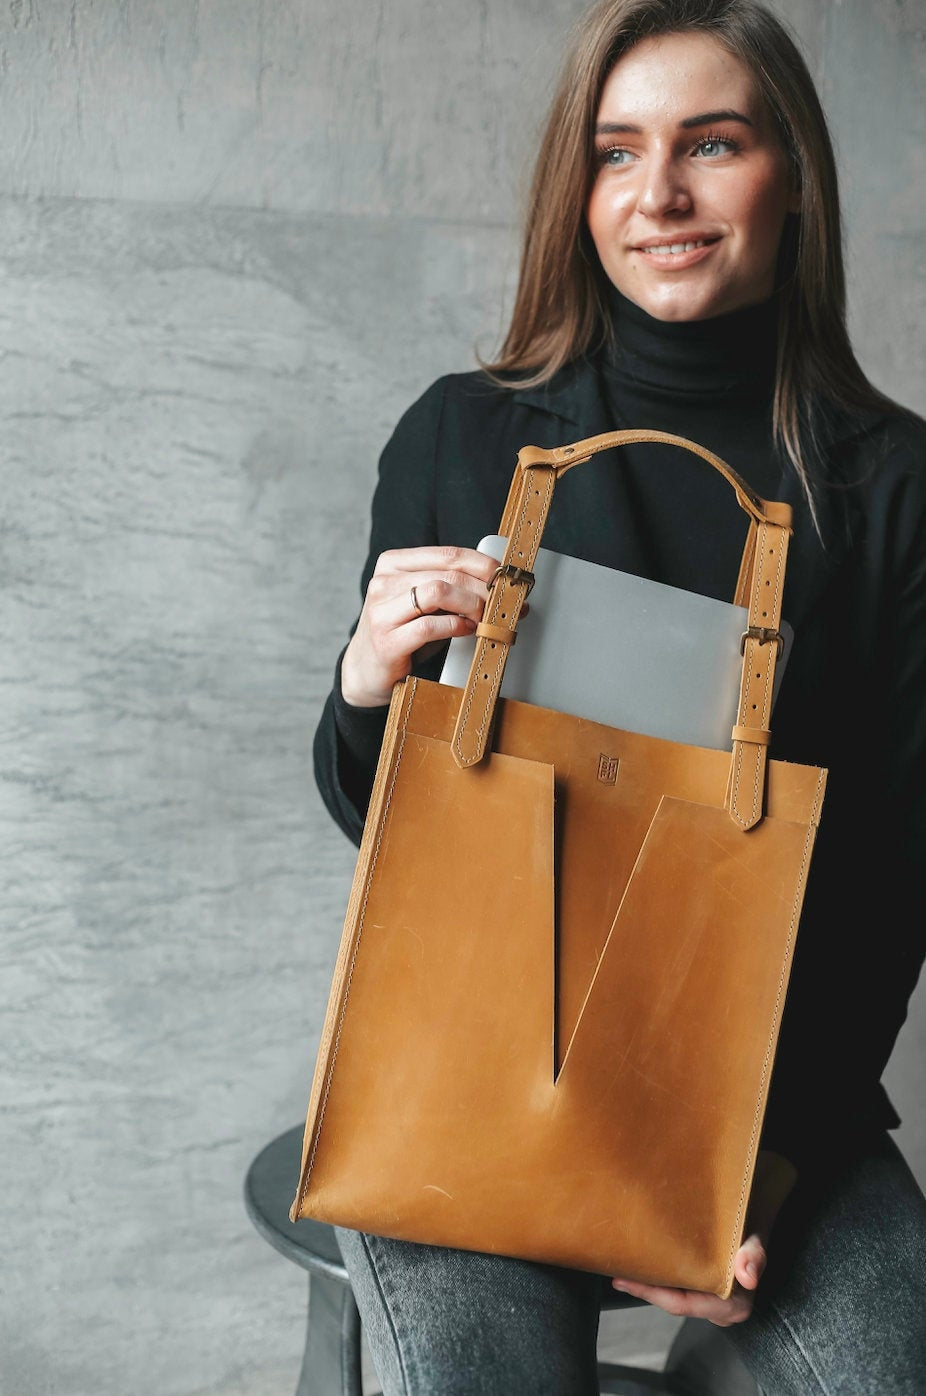 Handmade Leather Laptop Bag, Vintage Shoulder Tote for Women, Gifts